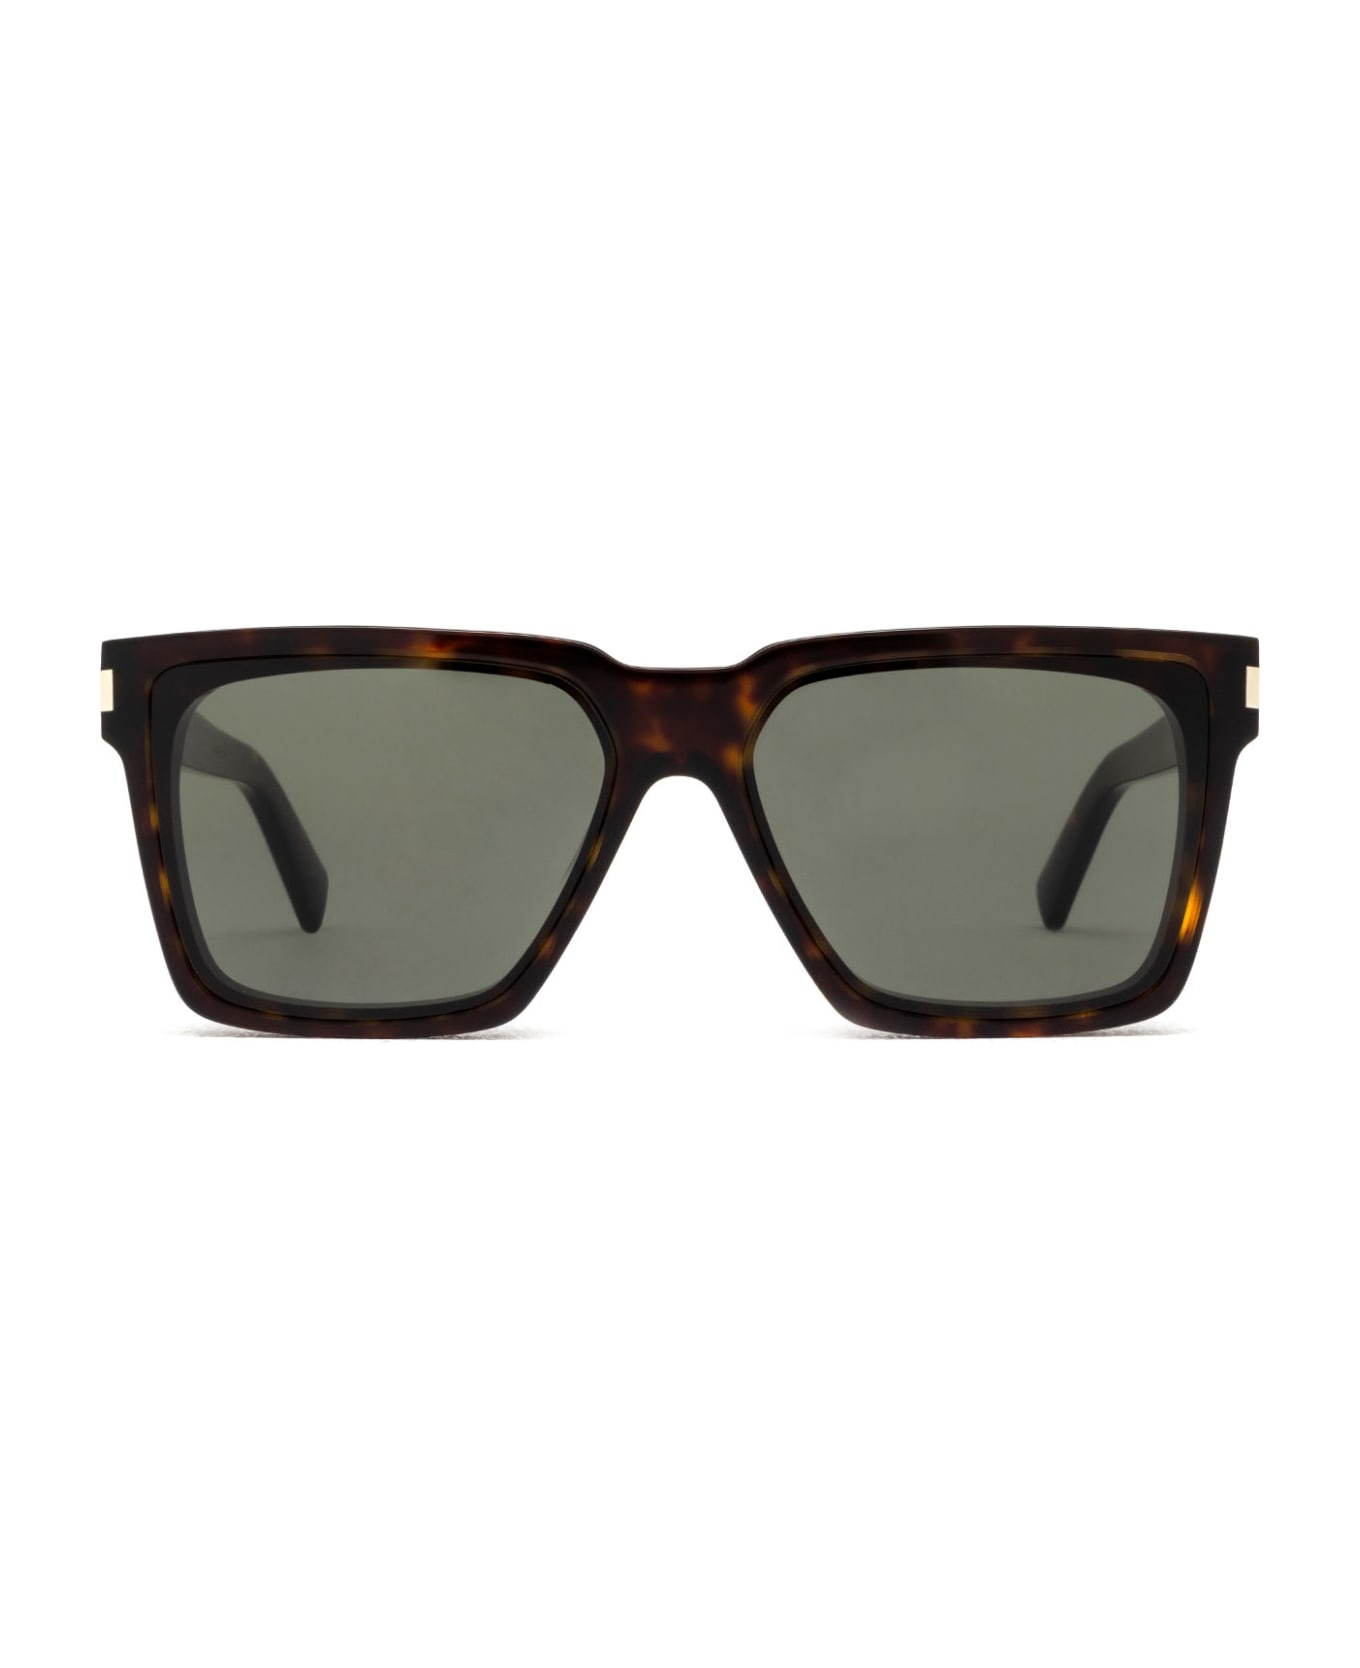 Saint Laurent Eyewear Sl 610 Havana Sunglasses - Havana